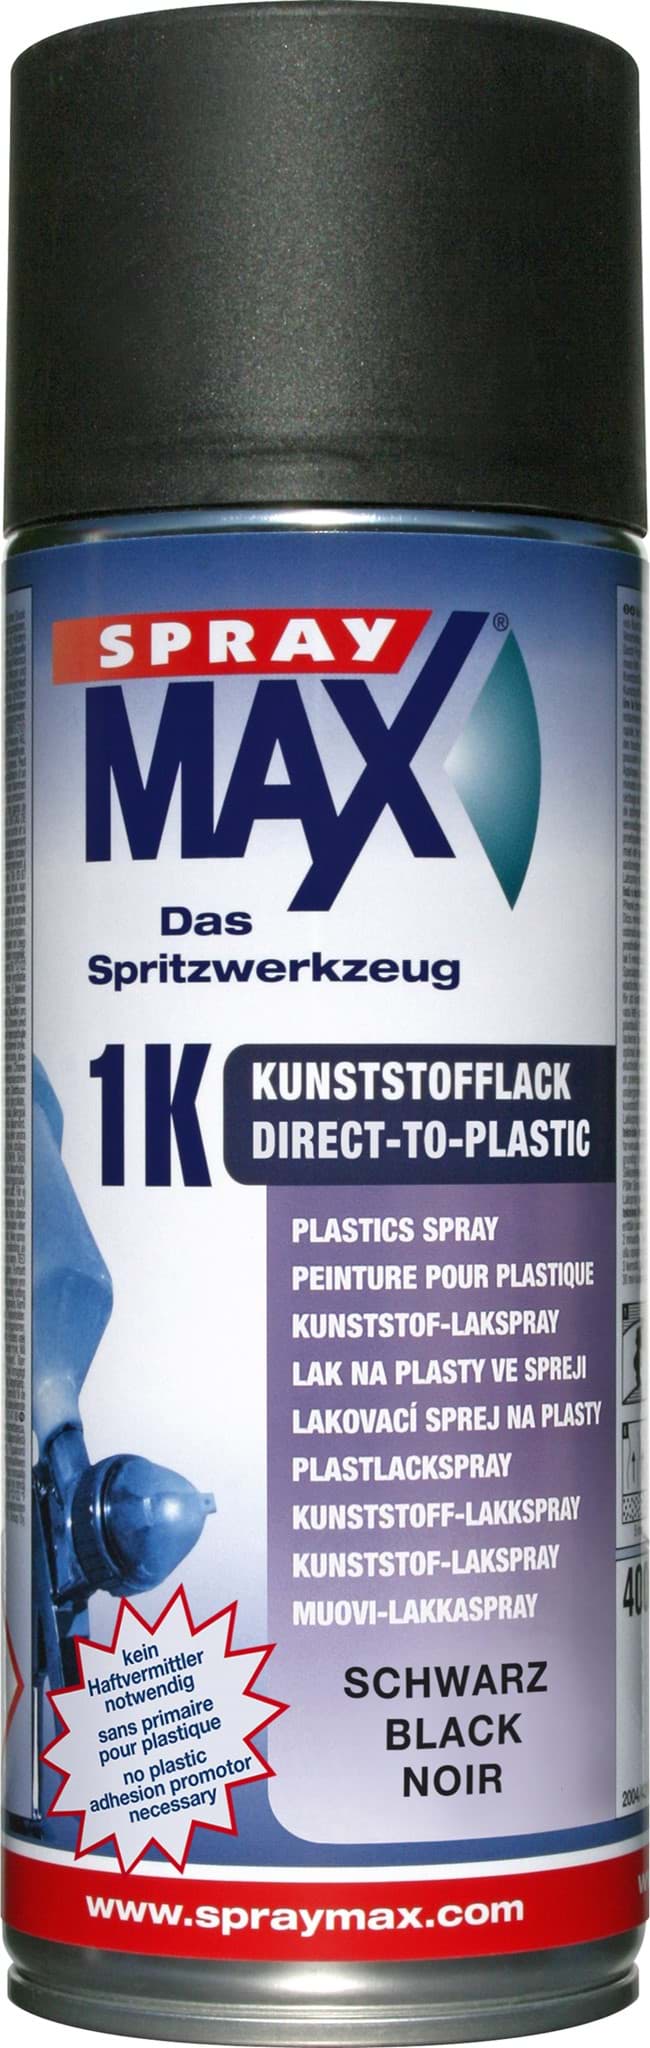 Afbeelding van SprayMax 1K DTP-Kunststofflack Schwarz 400ml 680046